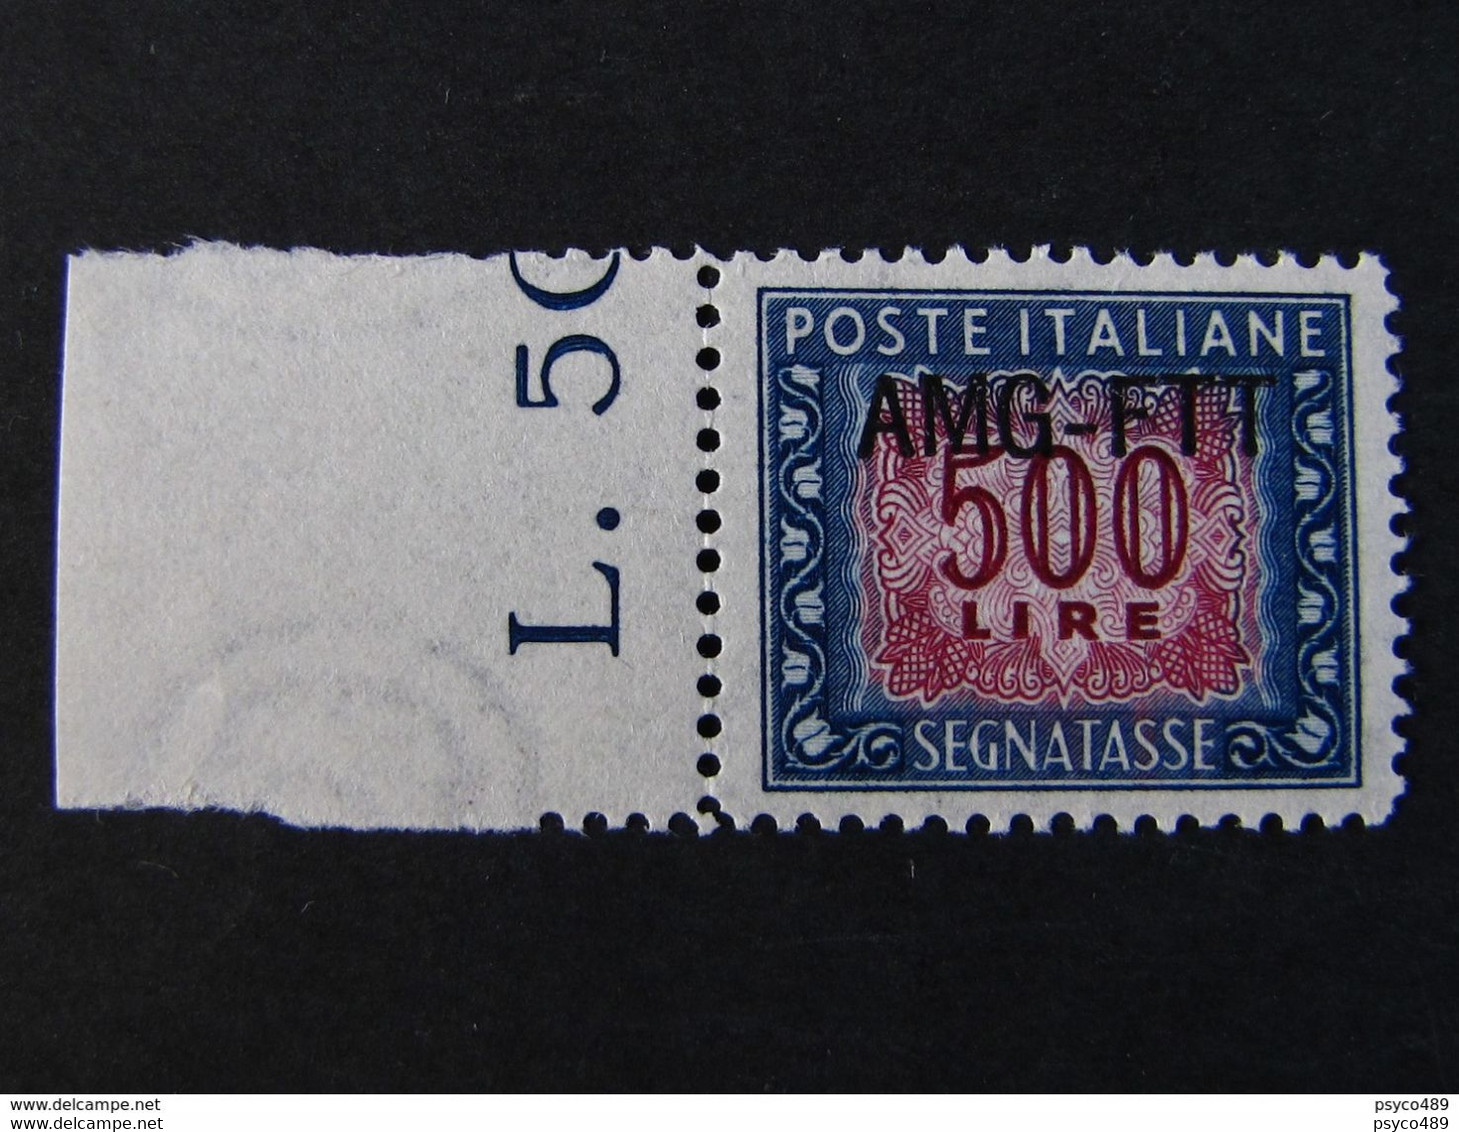 ITALIA Trieste Segnatasse AMG-FTT -1949-54- "Cifra" £. 500 Ottimamente Centrato MNH** (descrizione) - Postage Due